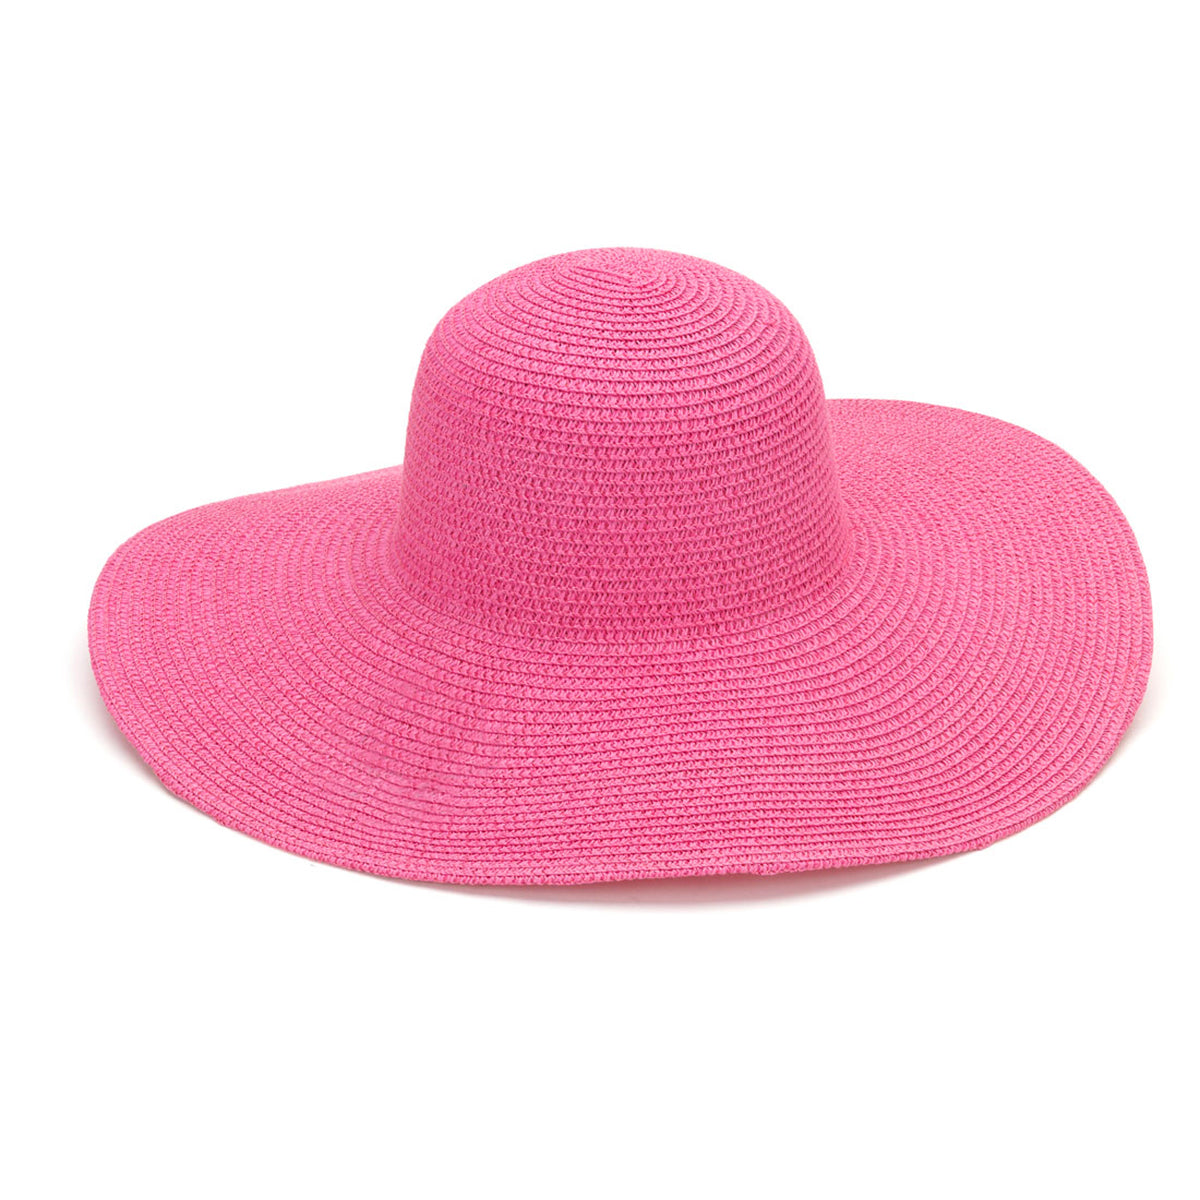 Hot Pink Floppy Sun Hat